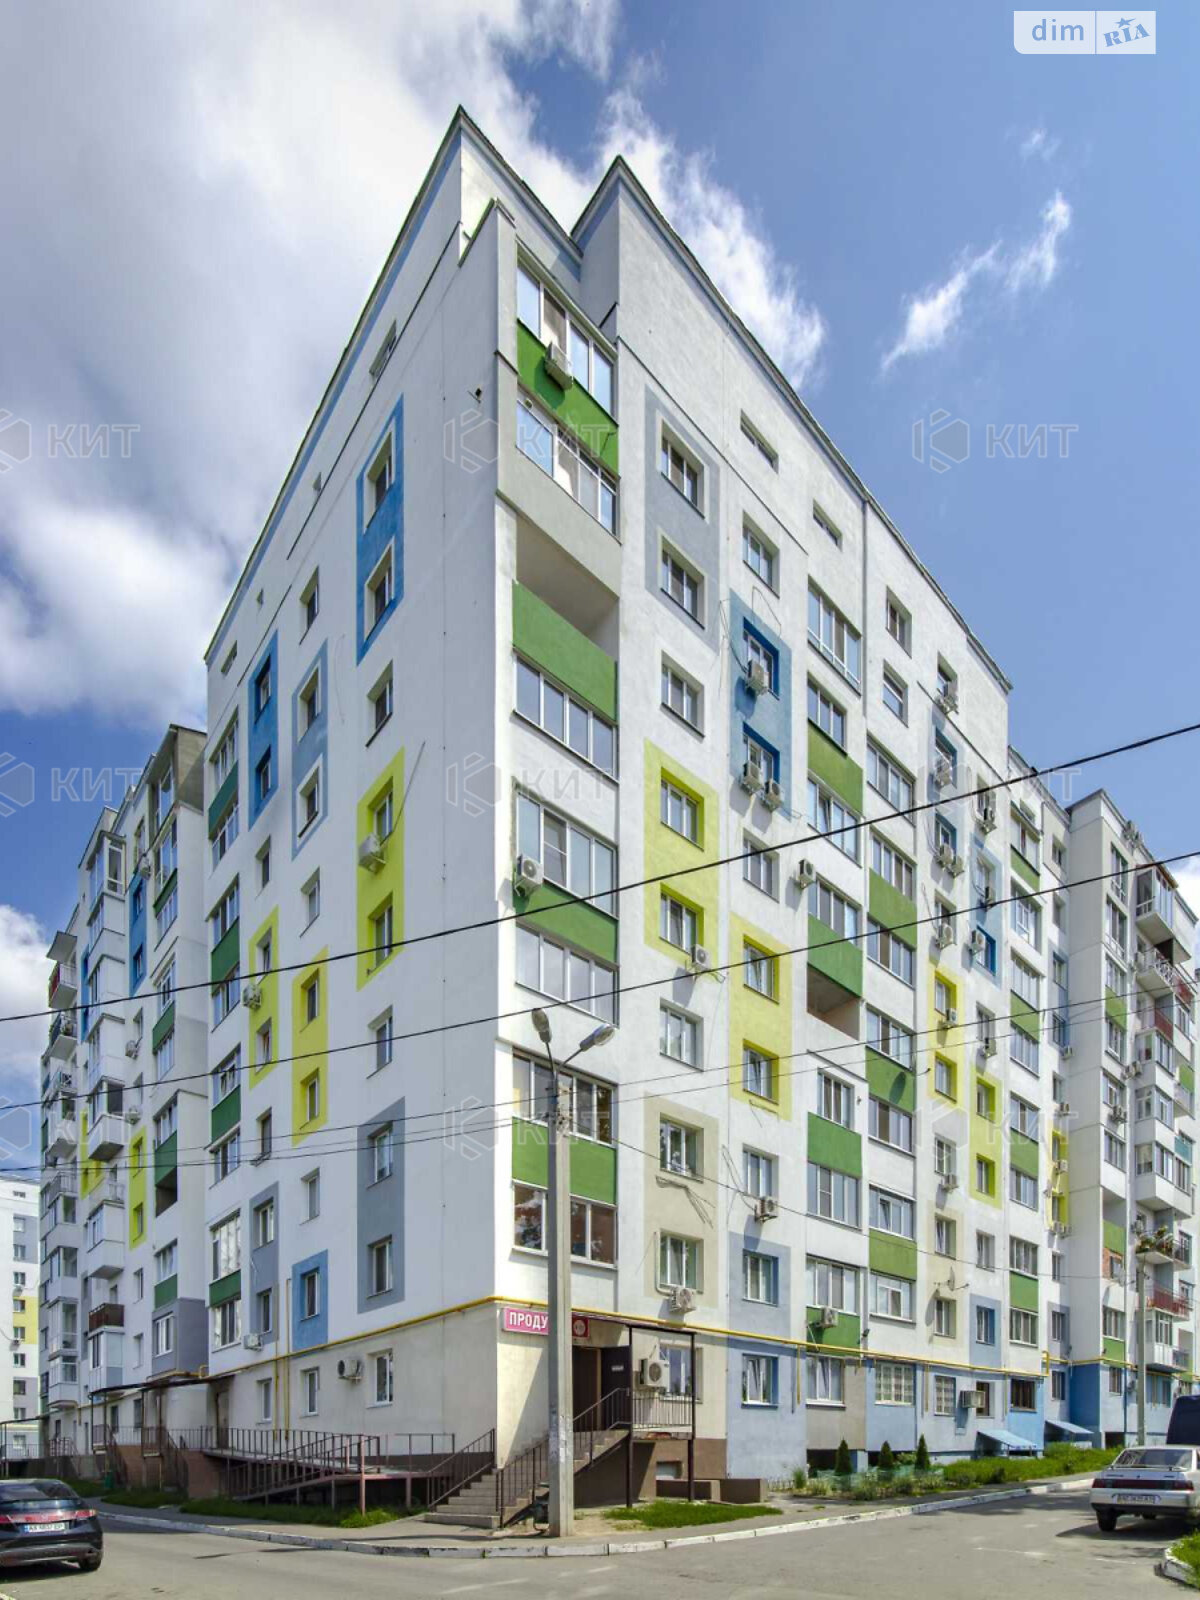 Продажа однокомнатной квартиры в Харькове, на ул. Дача 55 11, район Дача №55 фото 1